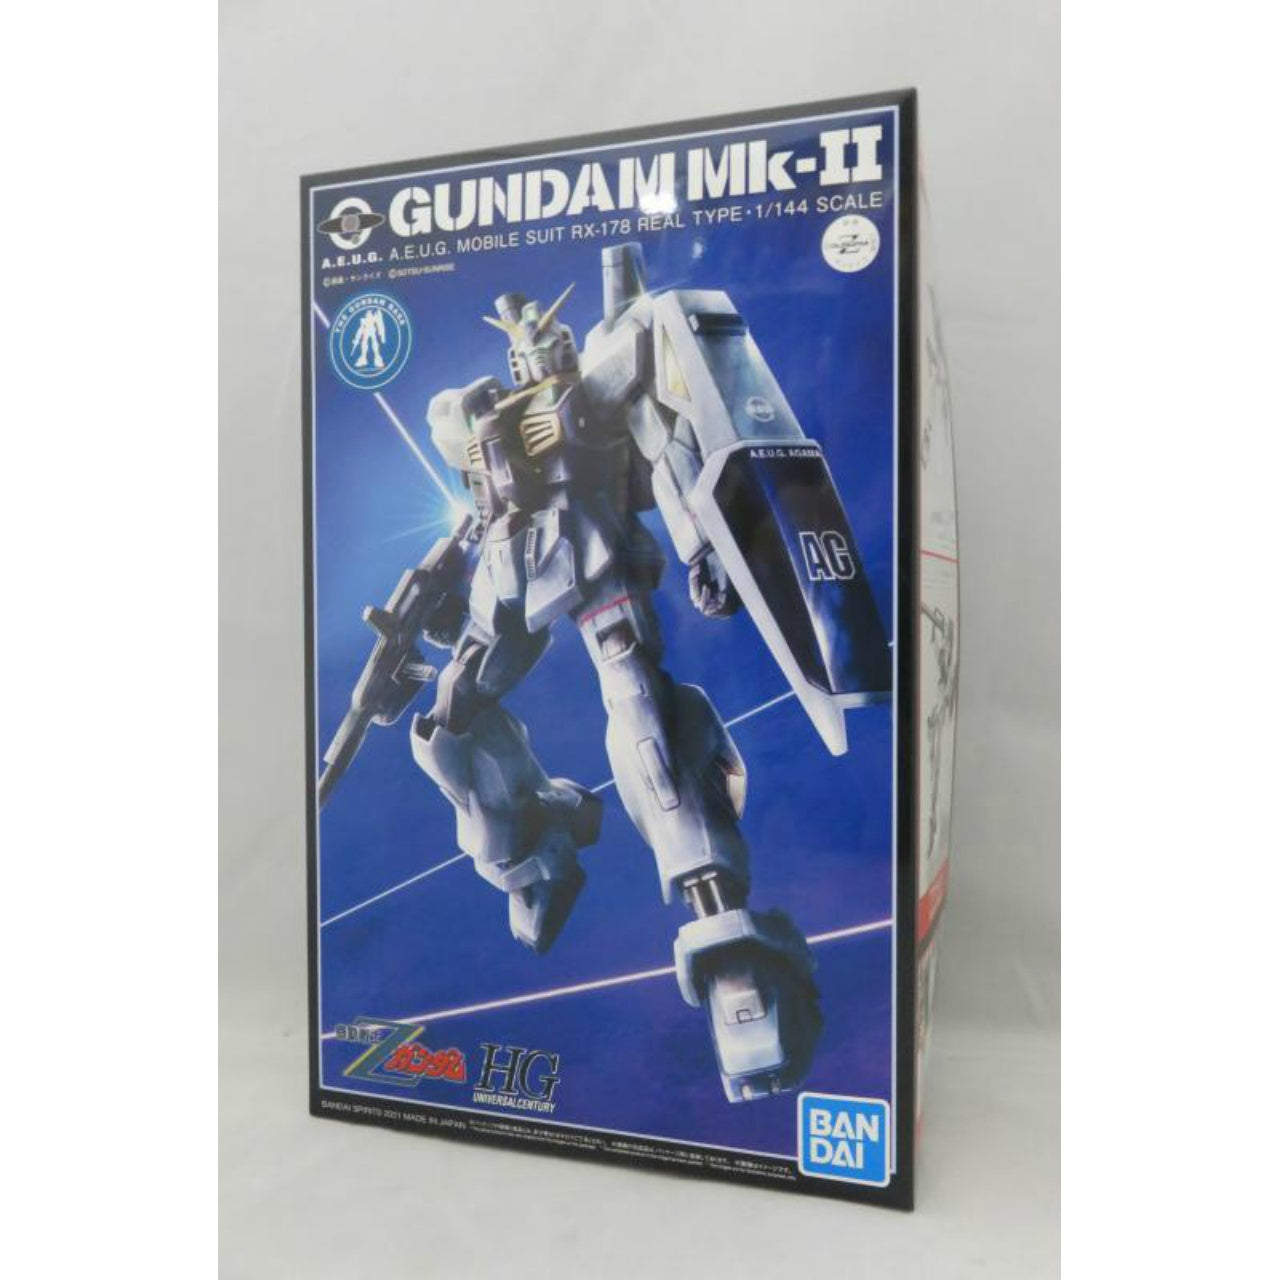 HGUC 1/144 Gundam Mk-II (21. JAHRHUNDERT REAL TYPE Ver.)